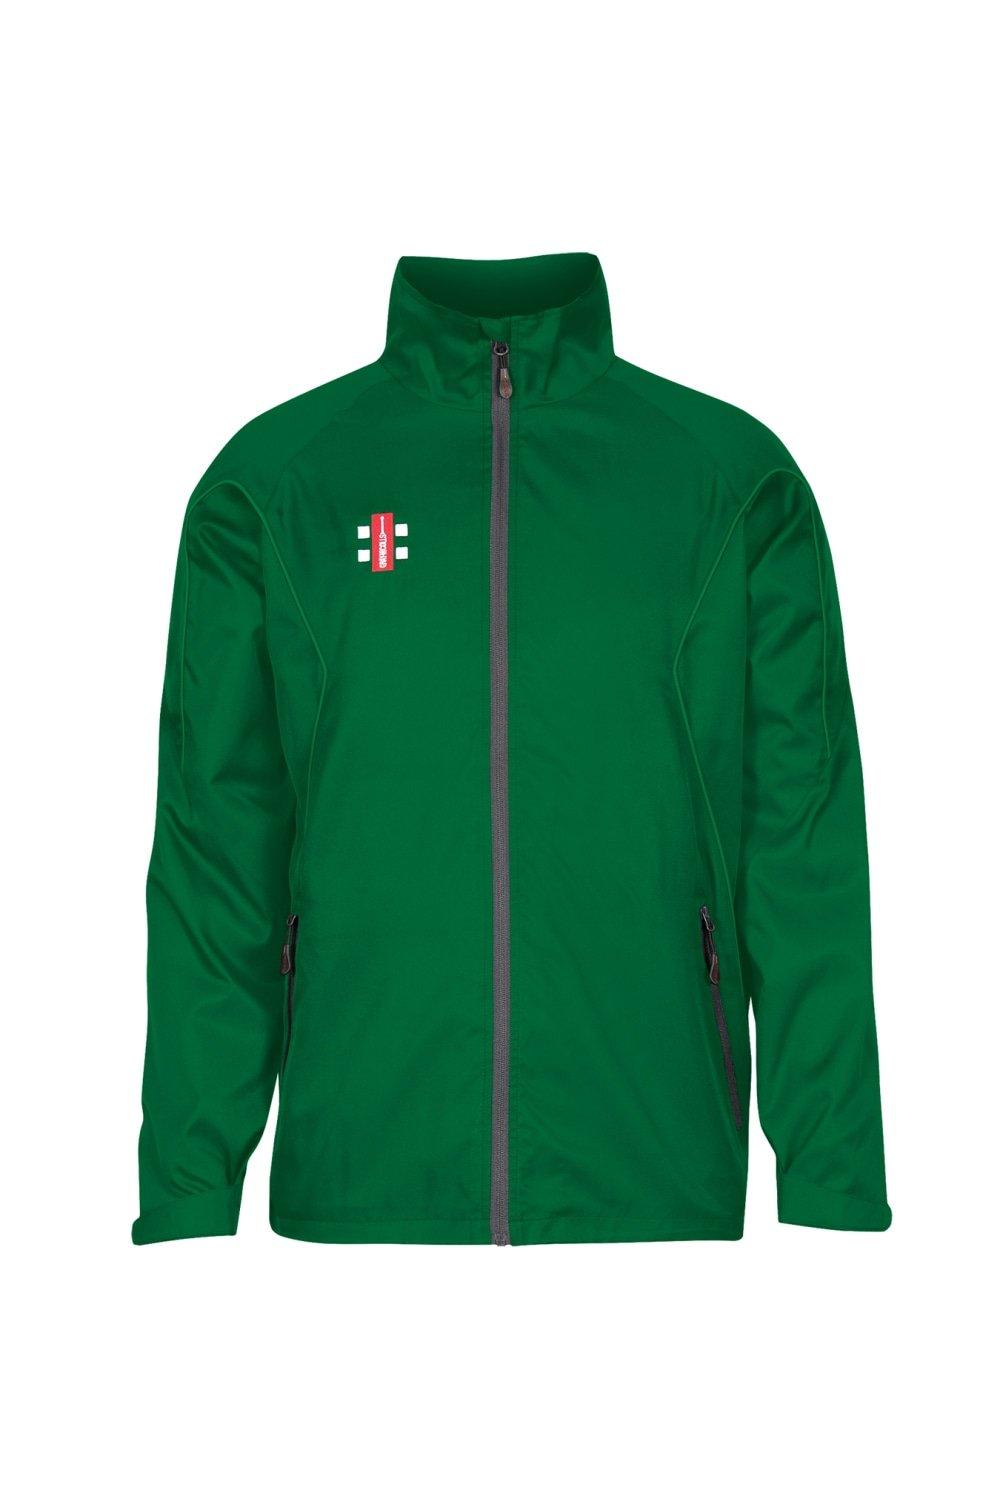 Тренировочная куртка Storm Gray-Nicolls, зеленый топ летний 42 44 размер